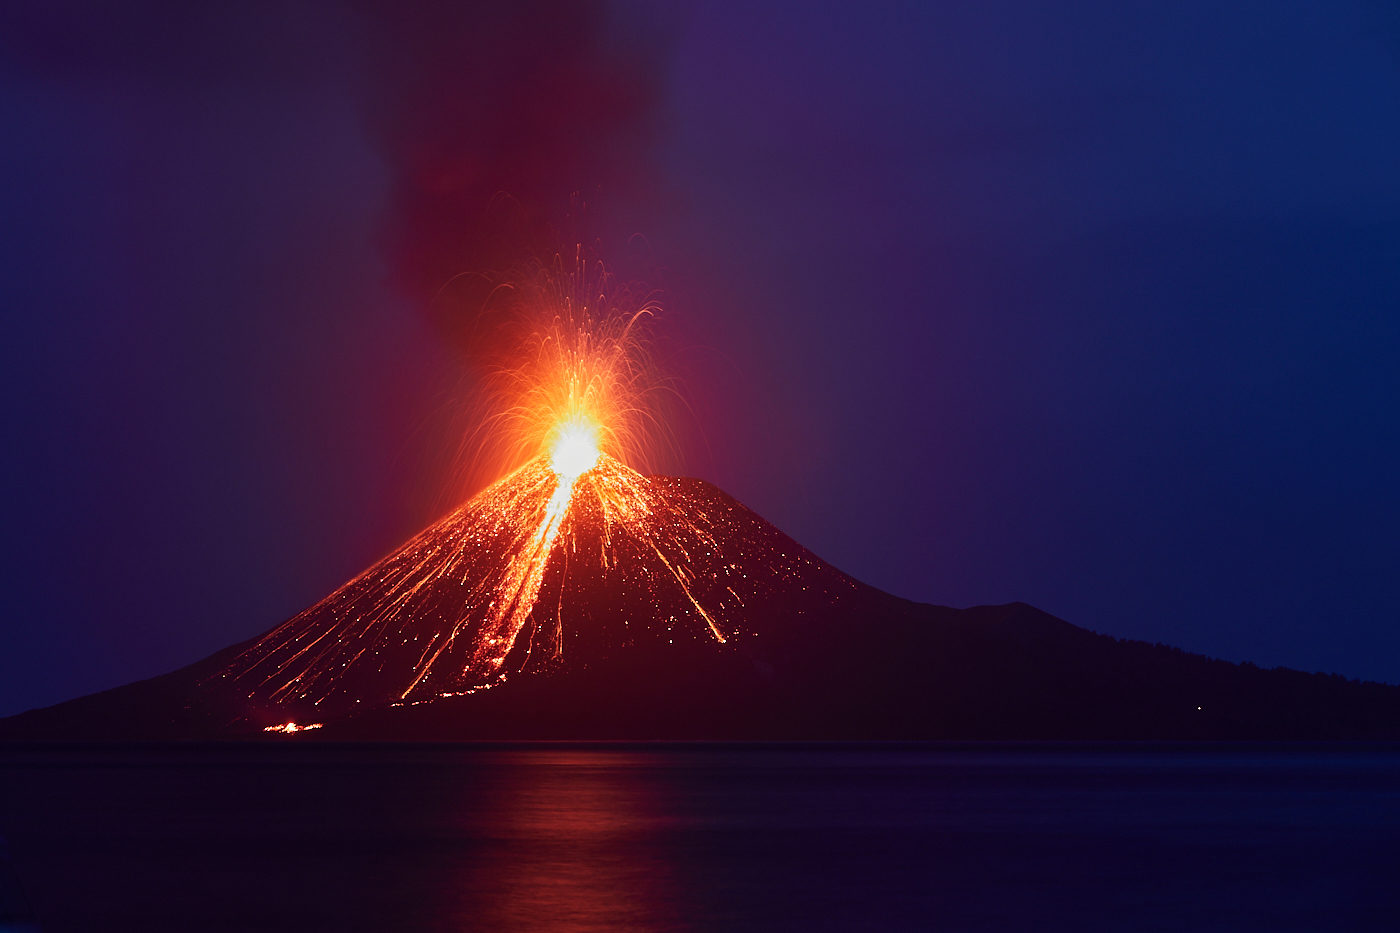 Anak Krakatua erupts sending